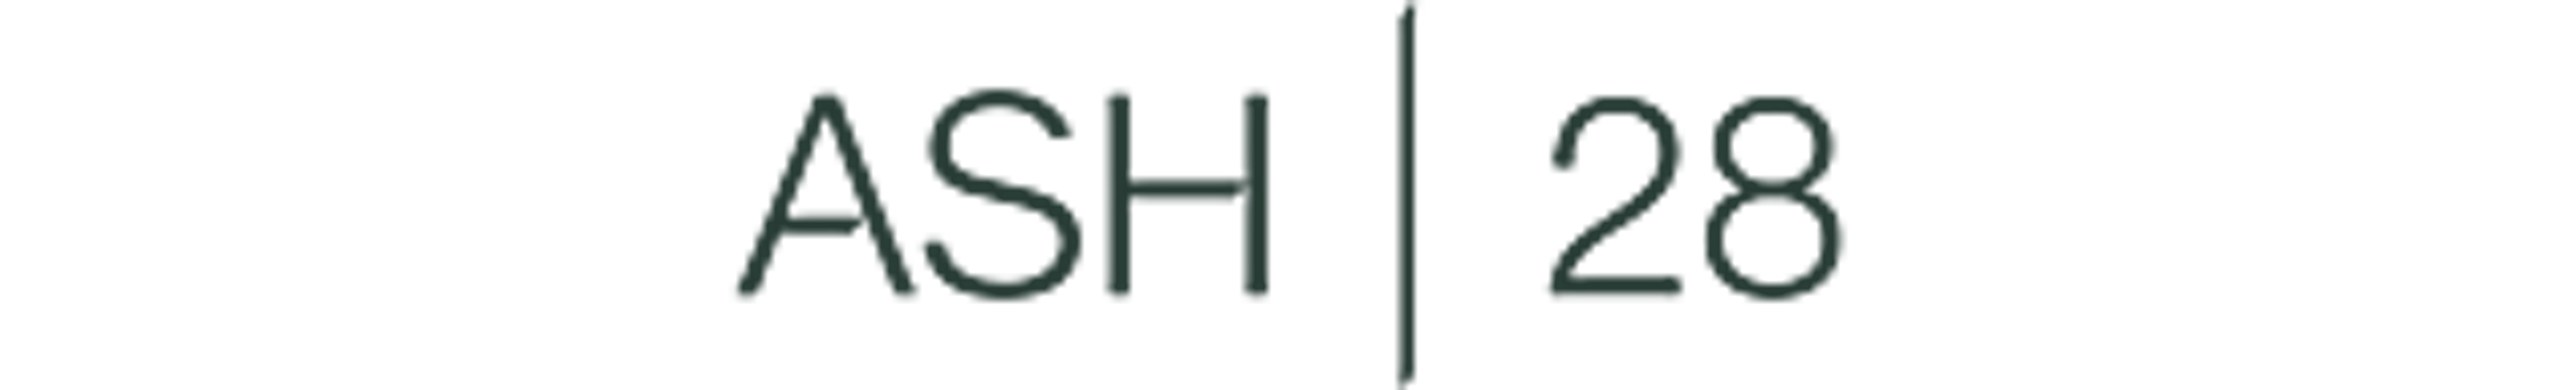 ASH | 28 logo